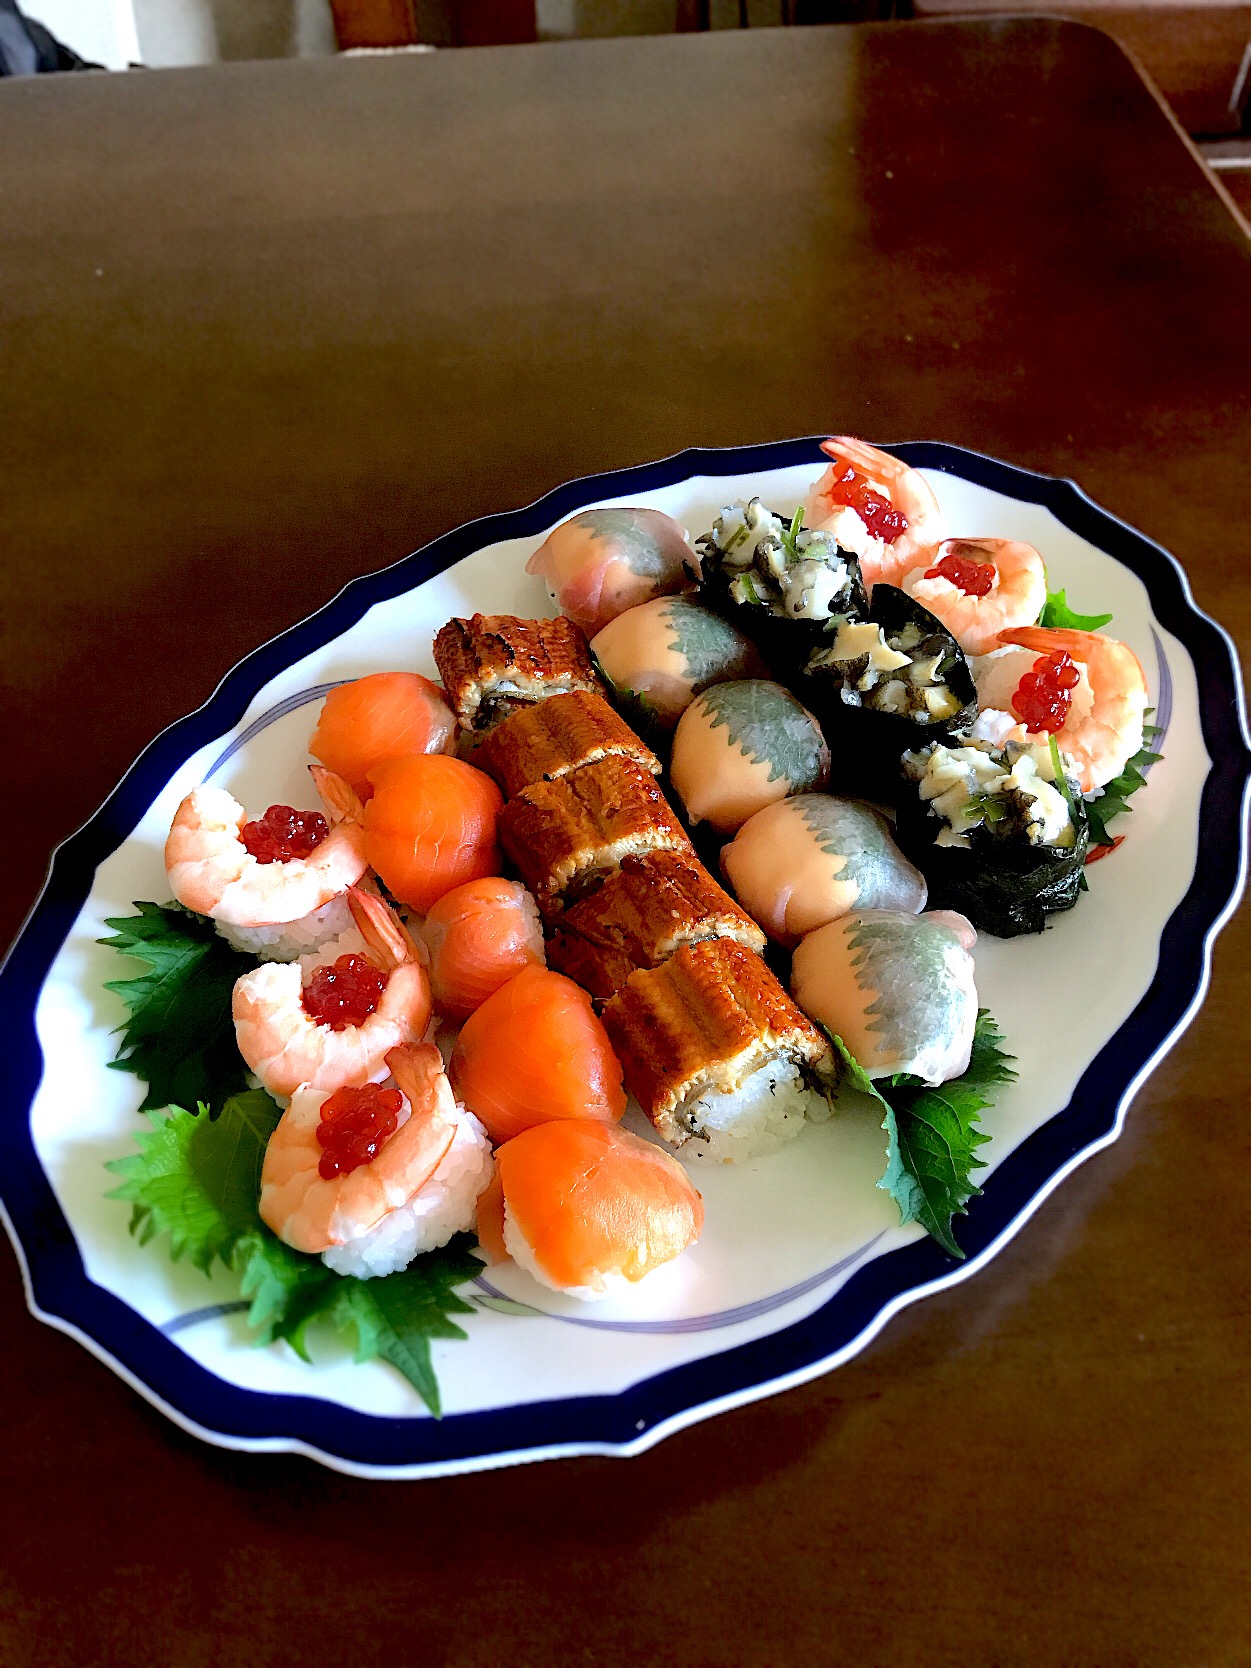 マダム とんちんさんの料理 鰻ロールと変わり手毬寿司寿司のワンプレート
#鰻ロール#手毬寿司